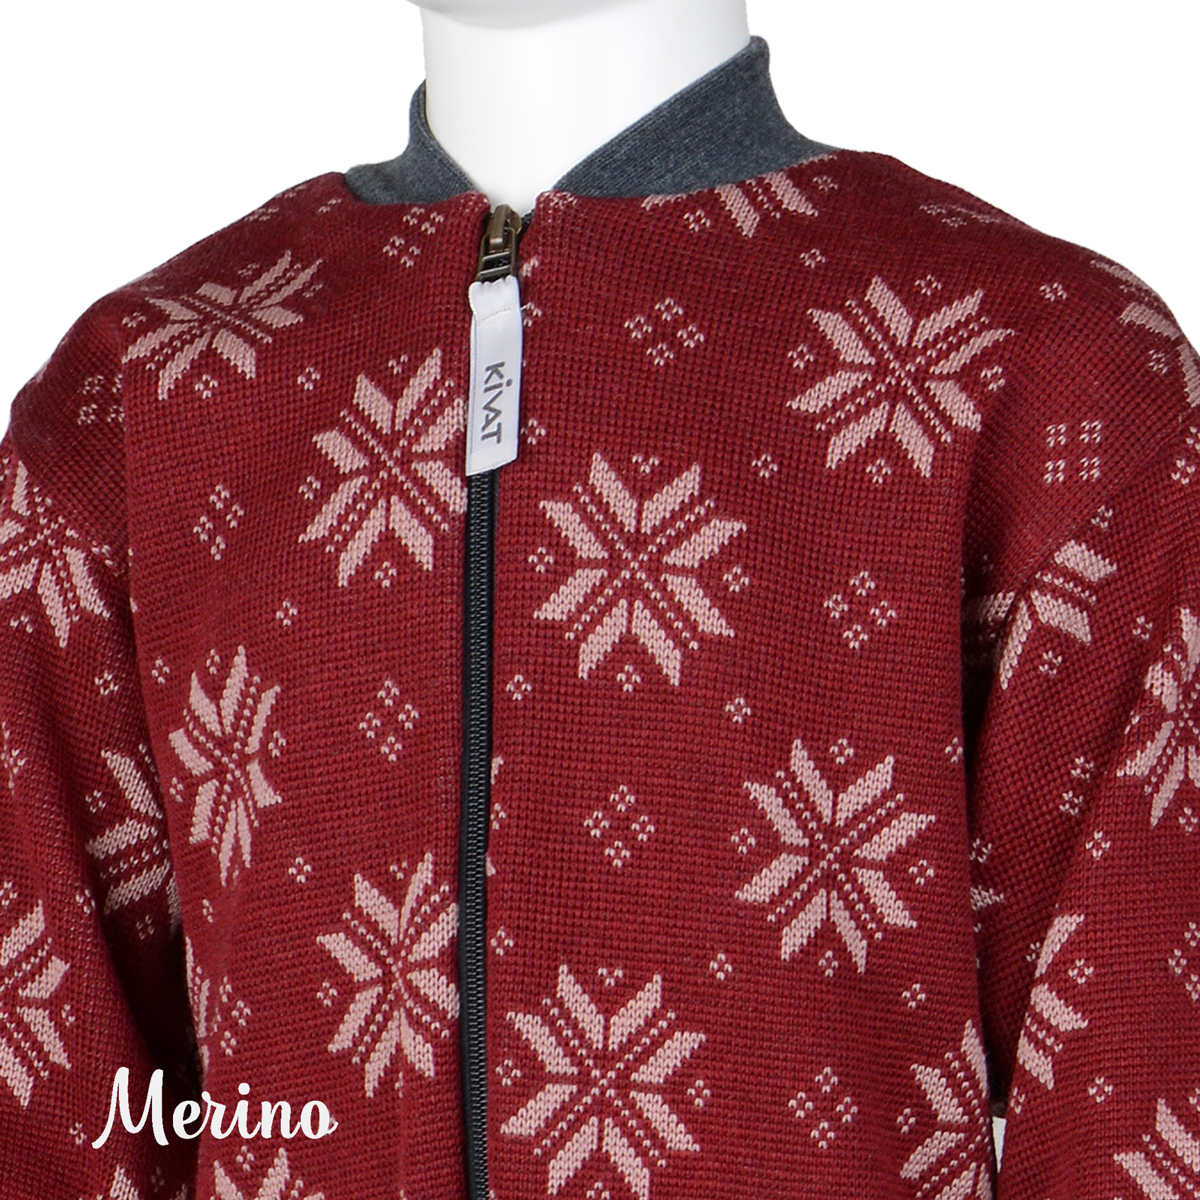 Snowflake Merino wool overall